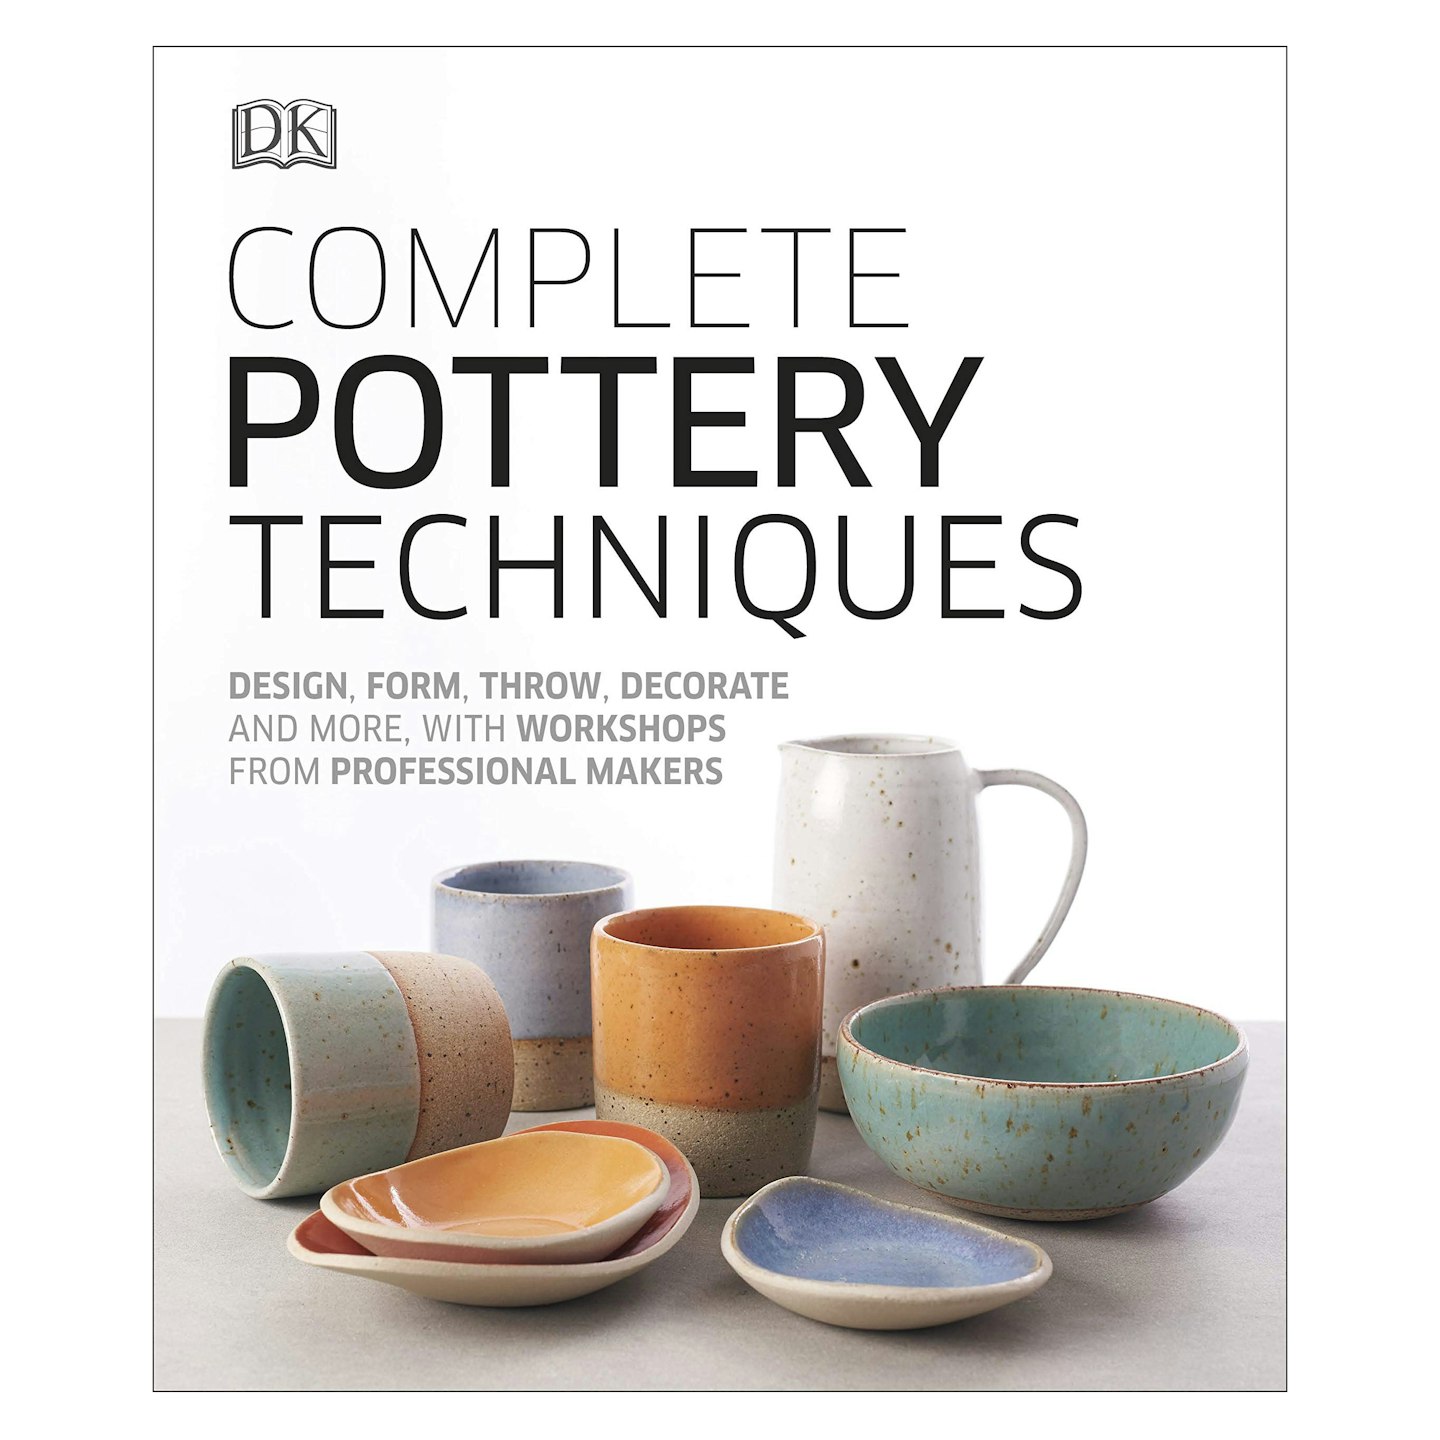 DK Complete Pottery Techniques